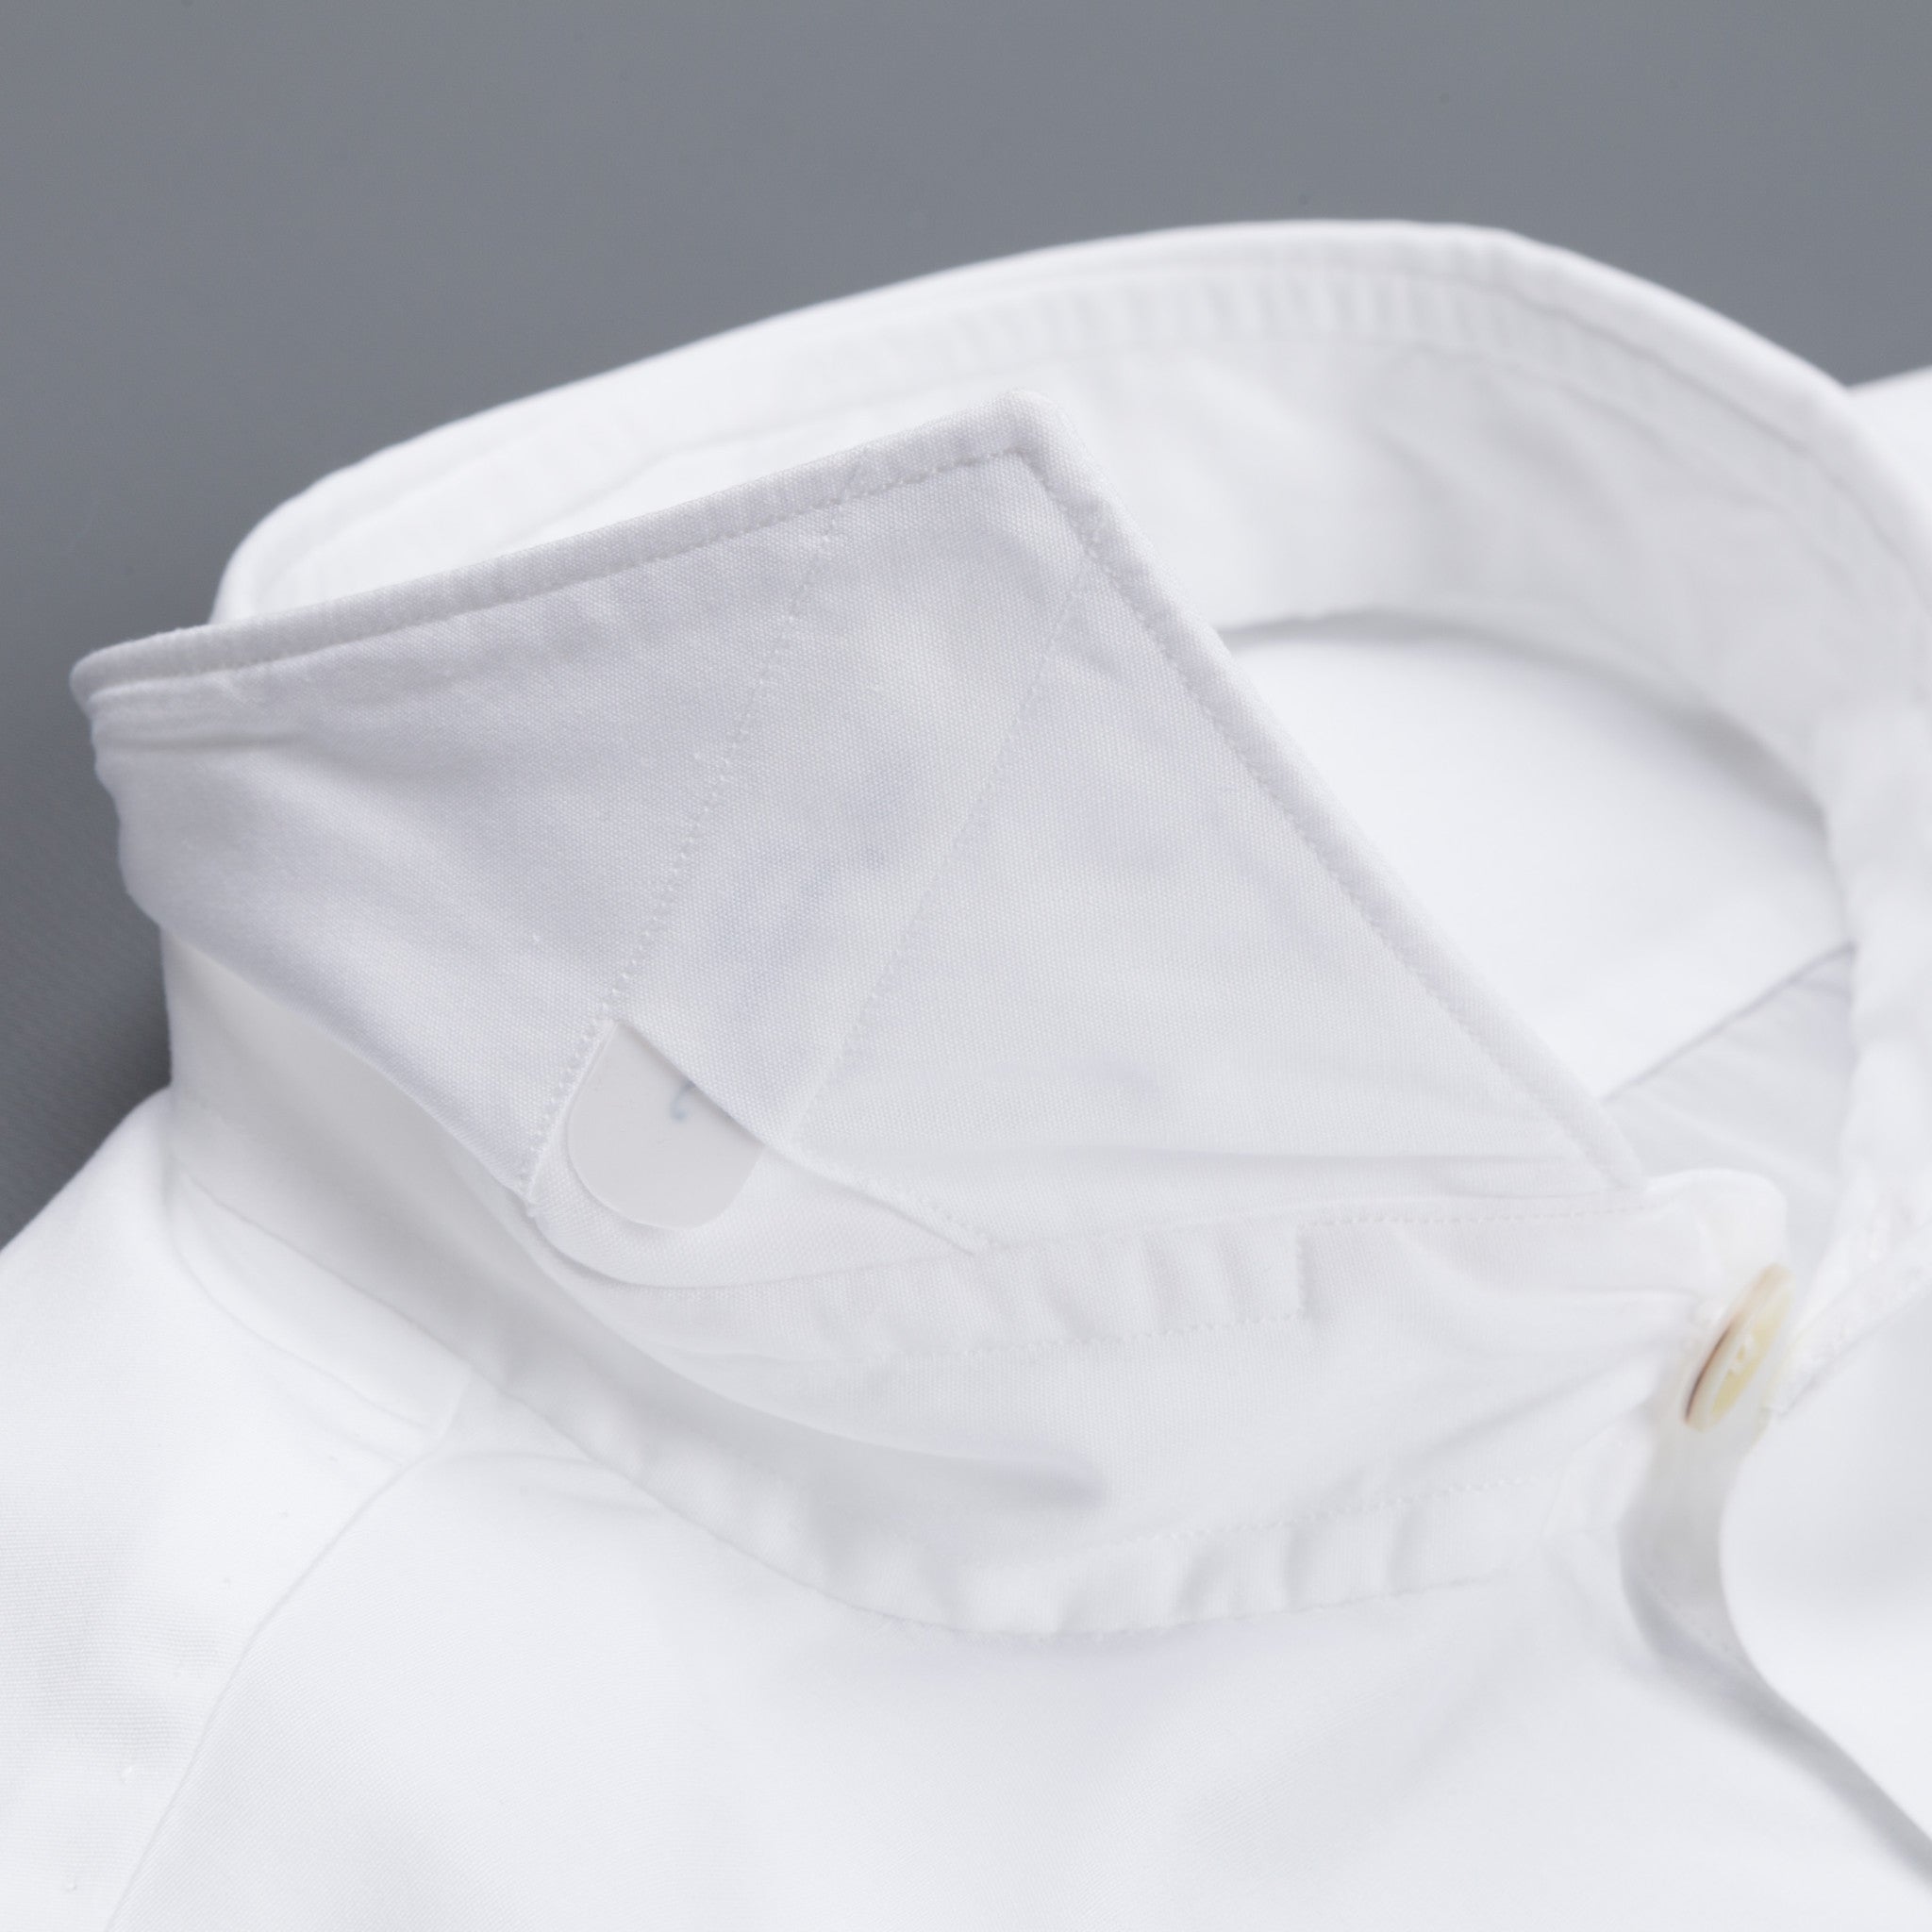 Finamore Seattle Shirt White alumo poplin